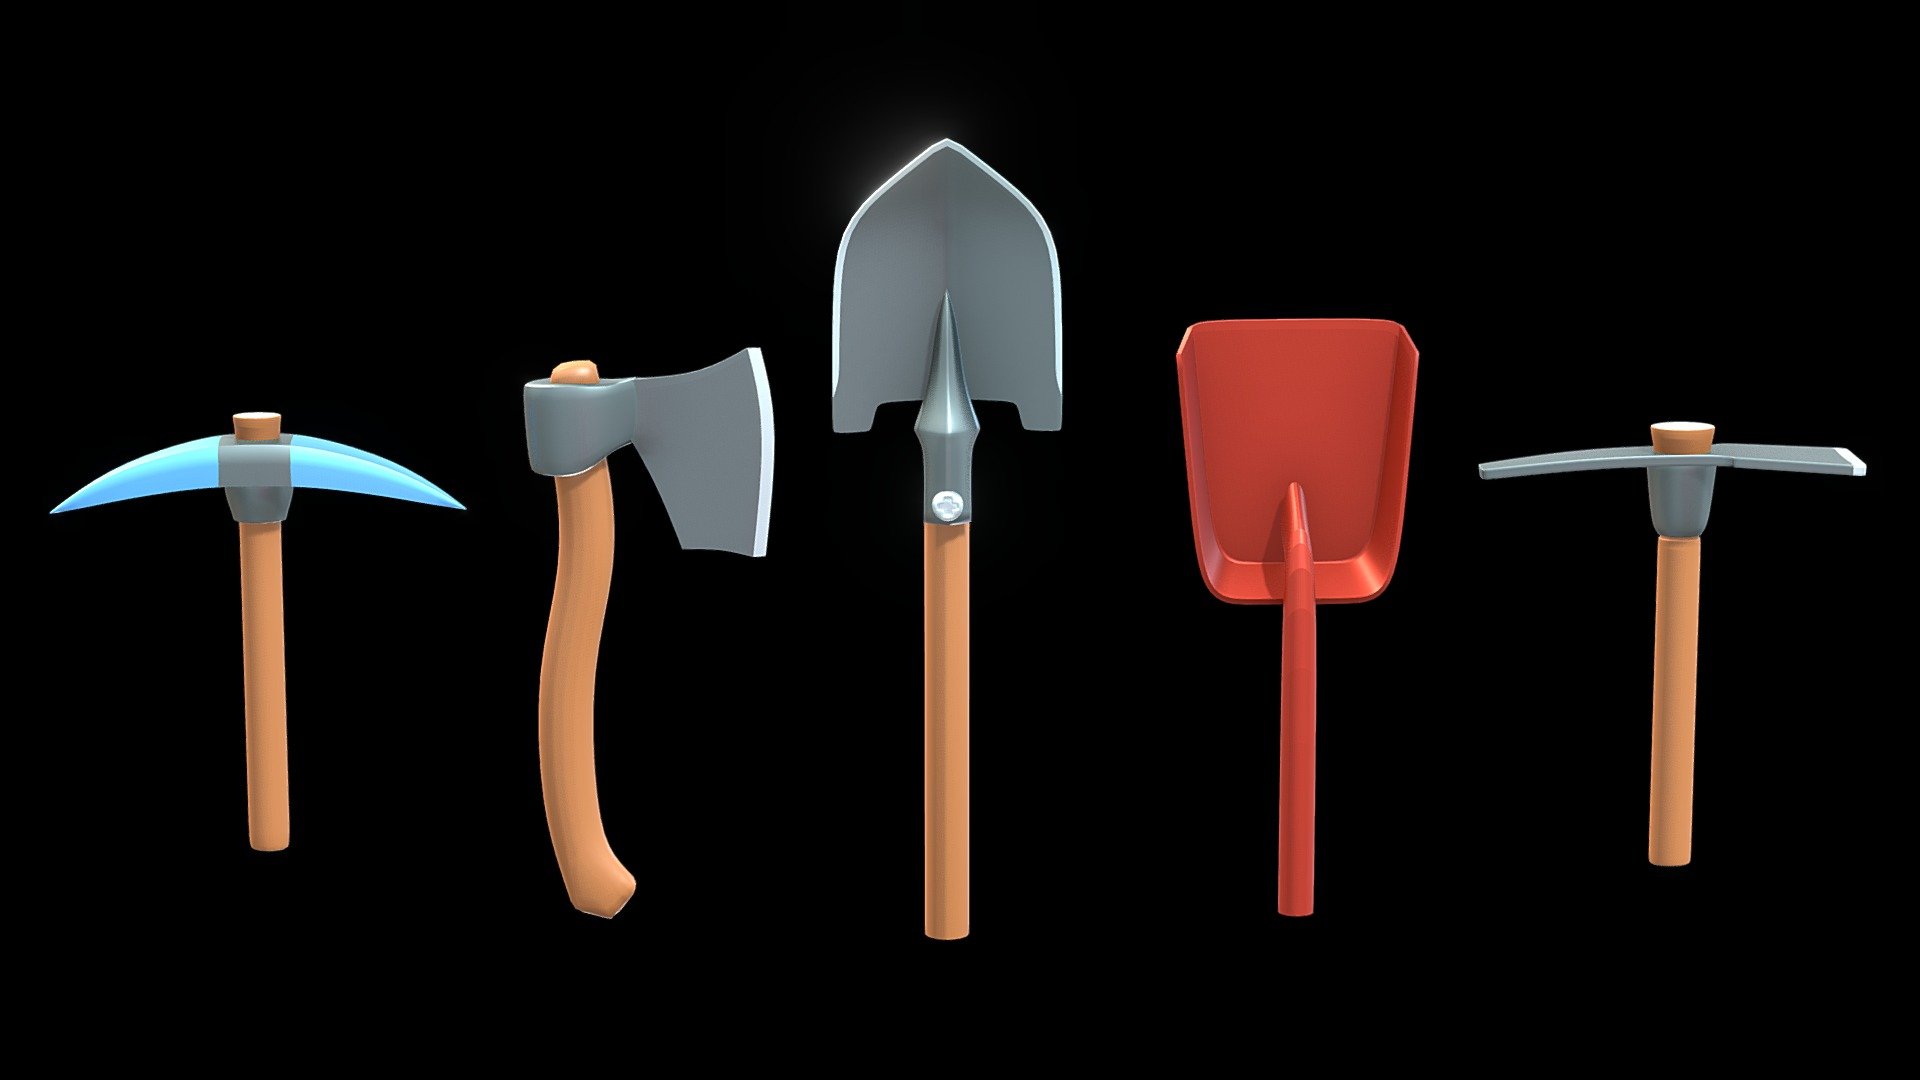 Shovel, pickaxe, axe - Shovel, Pickaxe ⛏️, Axe 🪓 - Buy Royalty Free 3D model by tkkjee 3d model